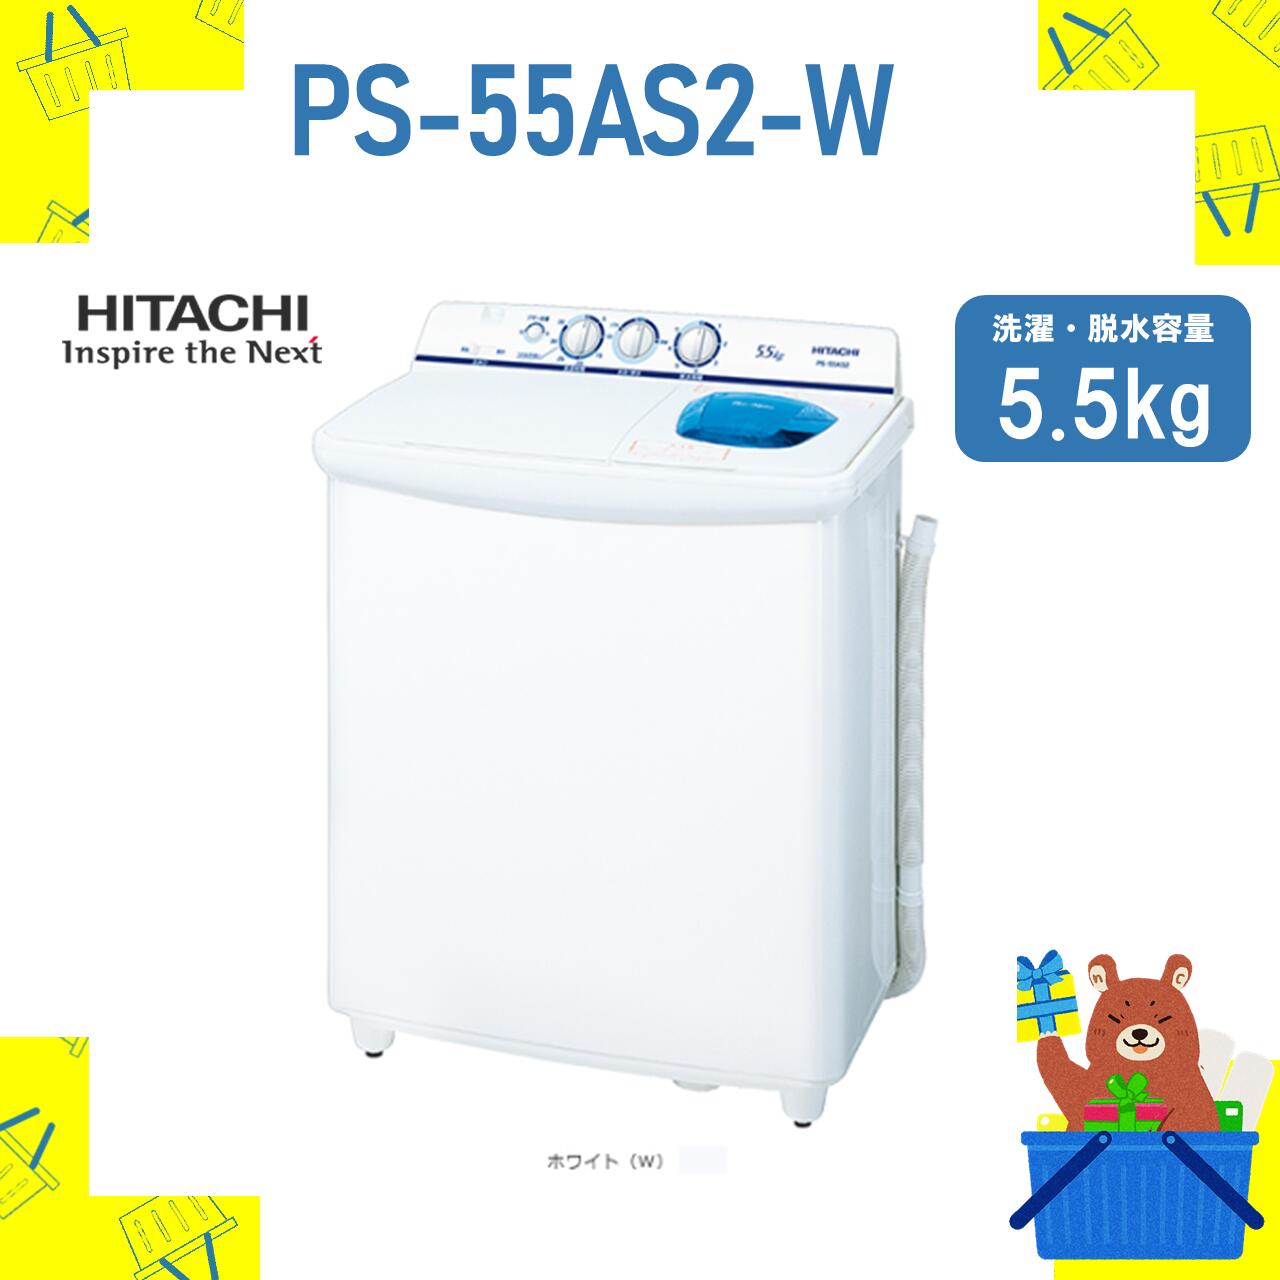 2槽式洗濯機 HITACHI 日立 PS-55AS2-W PS55AS2W 5.5kg 5.5キロ 新品 メーカー保証1年付き 青空 離島不可